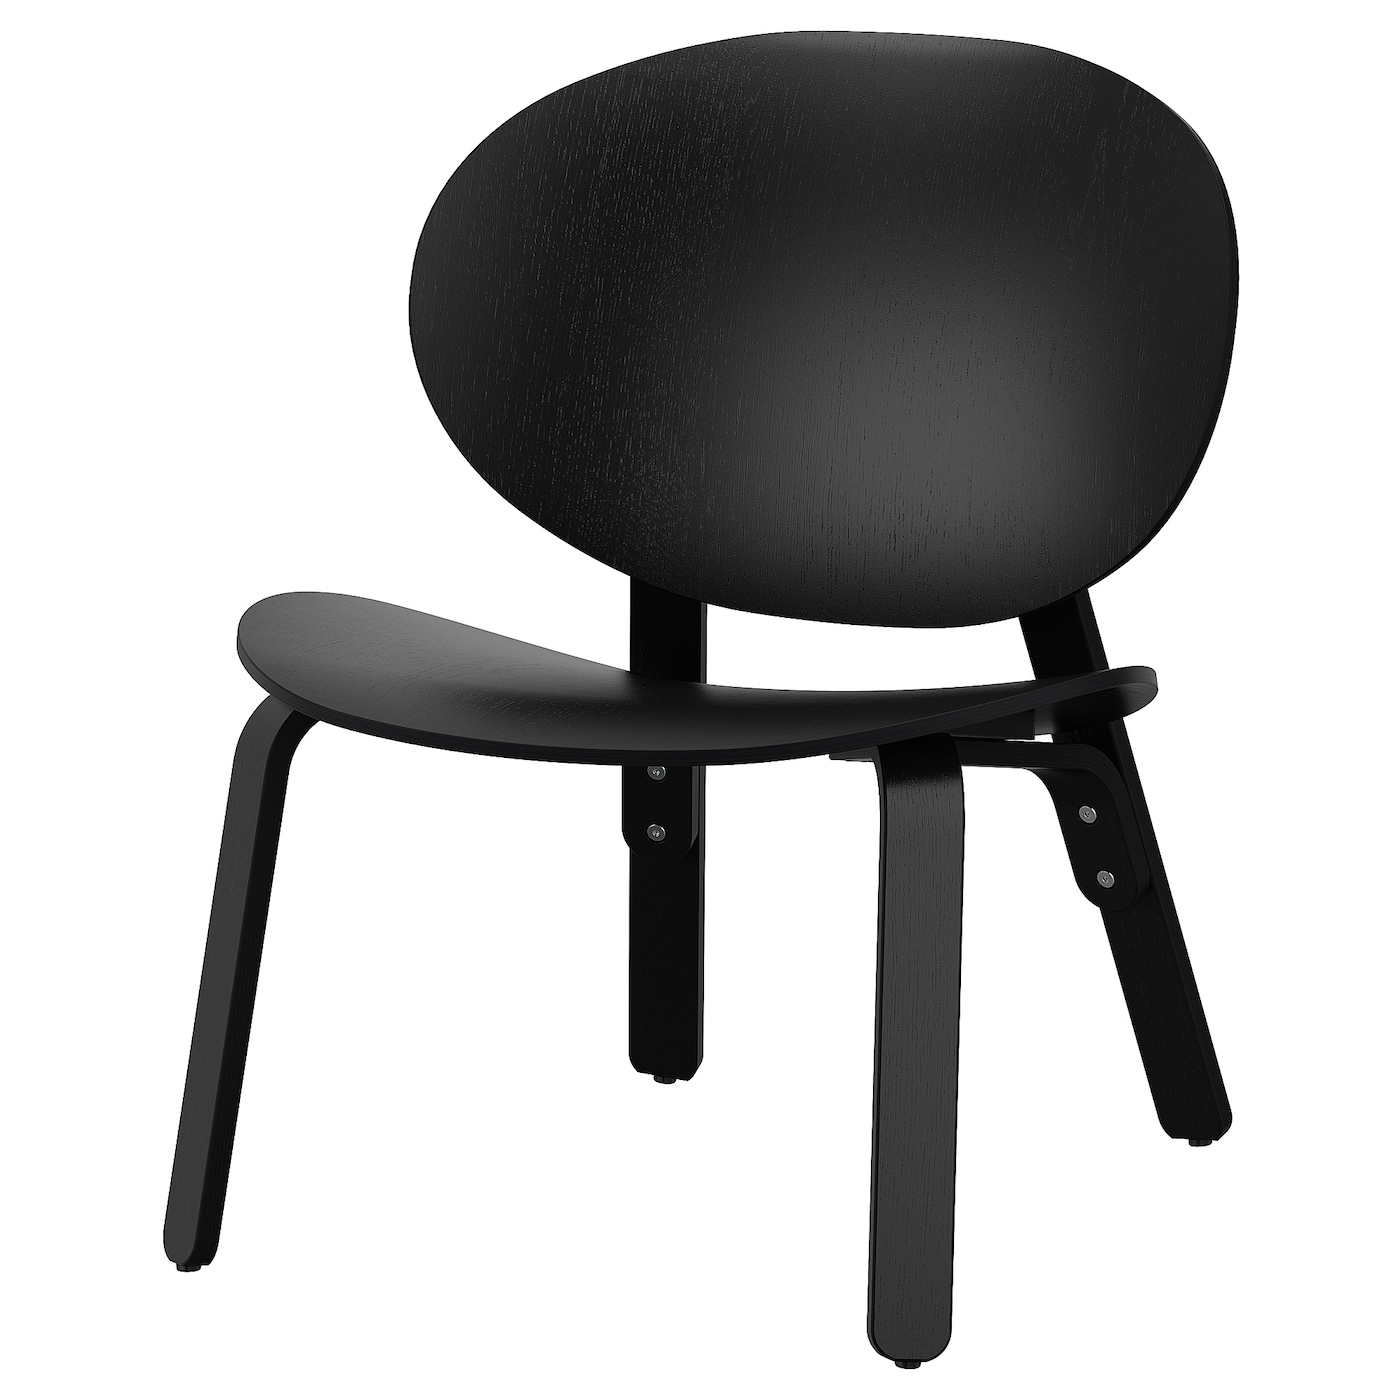 ФРОЗЕТ Кресло, дубовый шпон, крашеный в черный цвет FRÖSET IKEA складное кресло с откидывающейся спинкой сидячее раскладное кресло siesta кресло для зимней рыбалки пляжное кресло для улицы дома